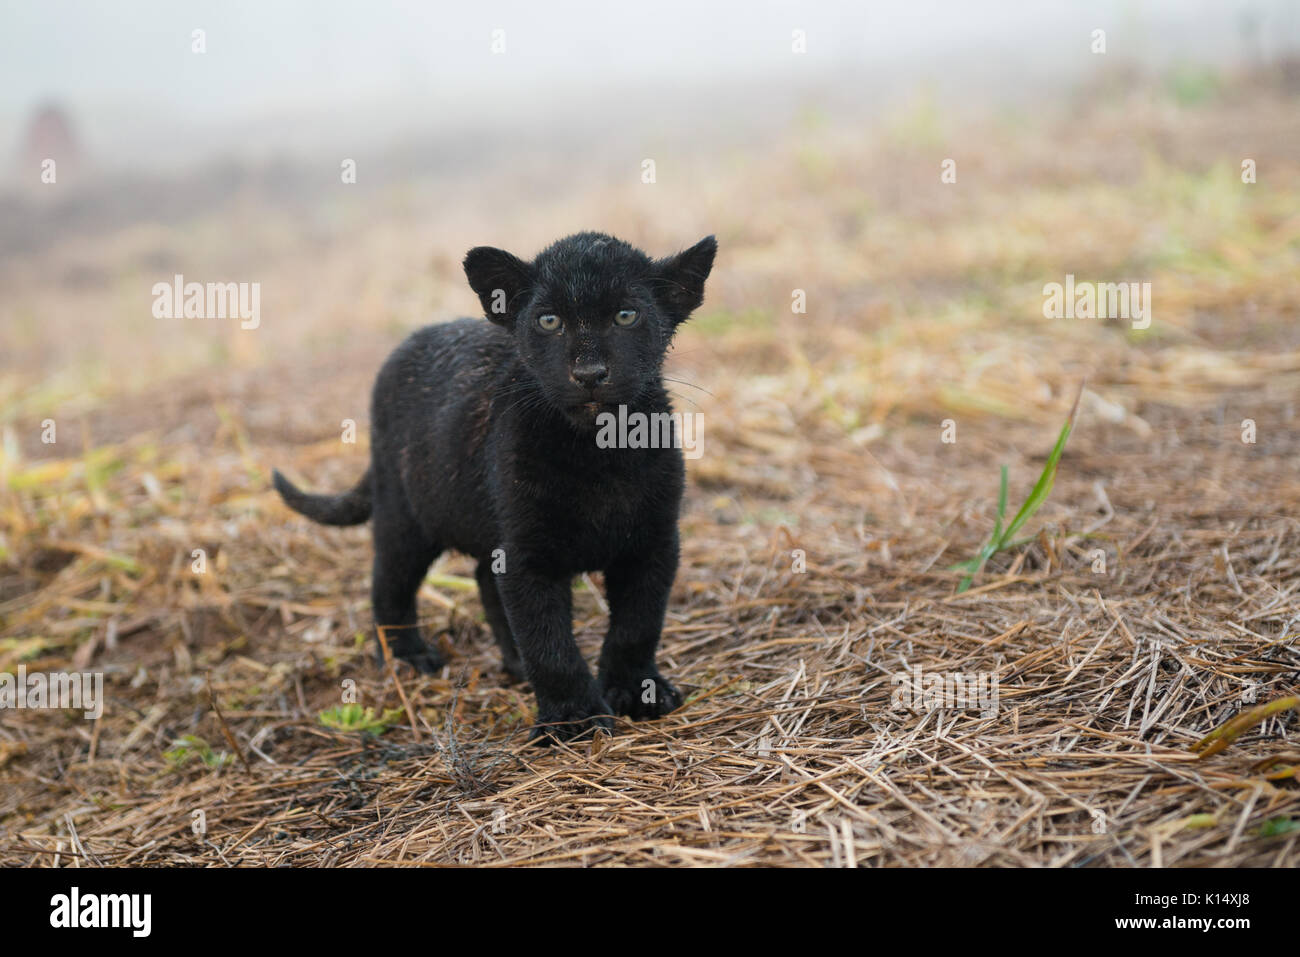 Baby Black Jaguar Banque D Image Et Photos Alamy